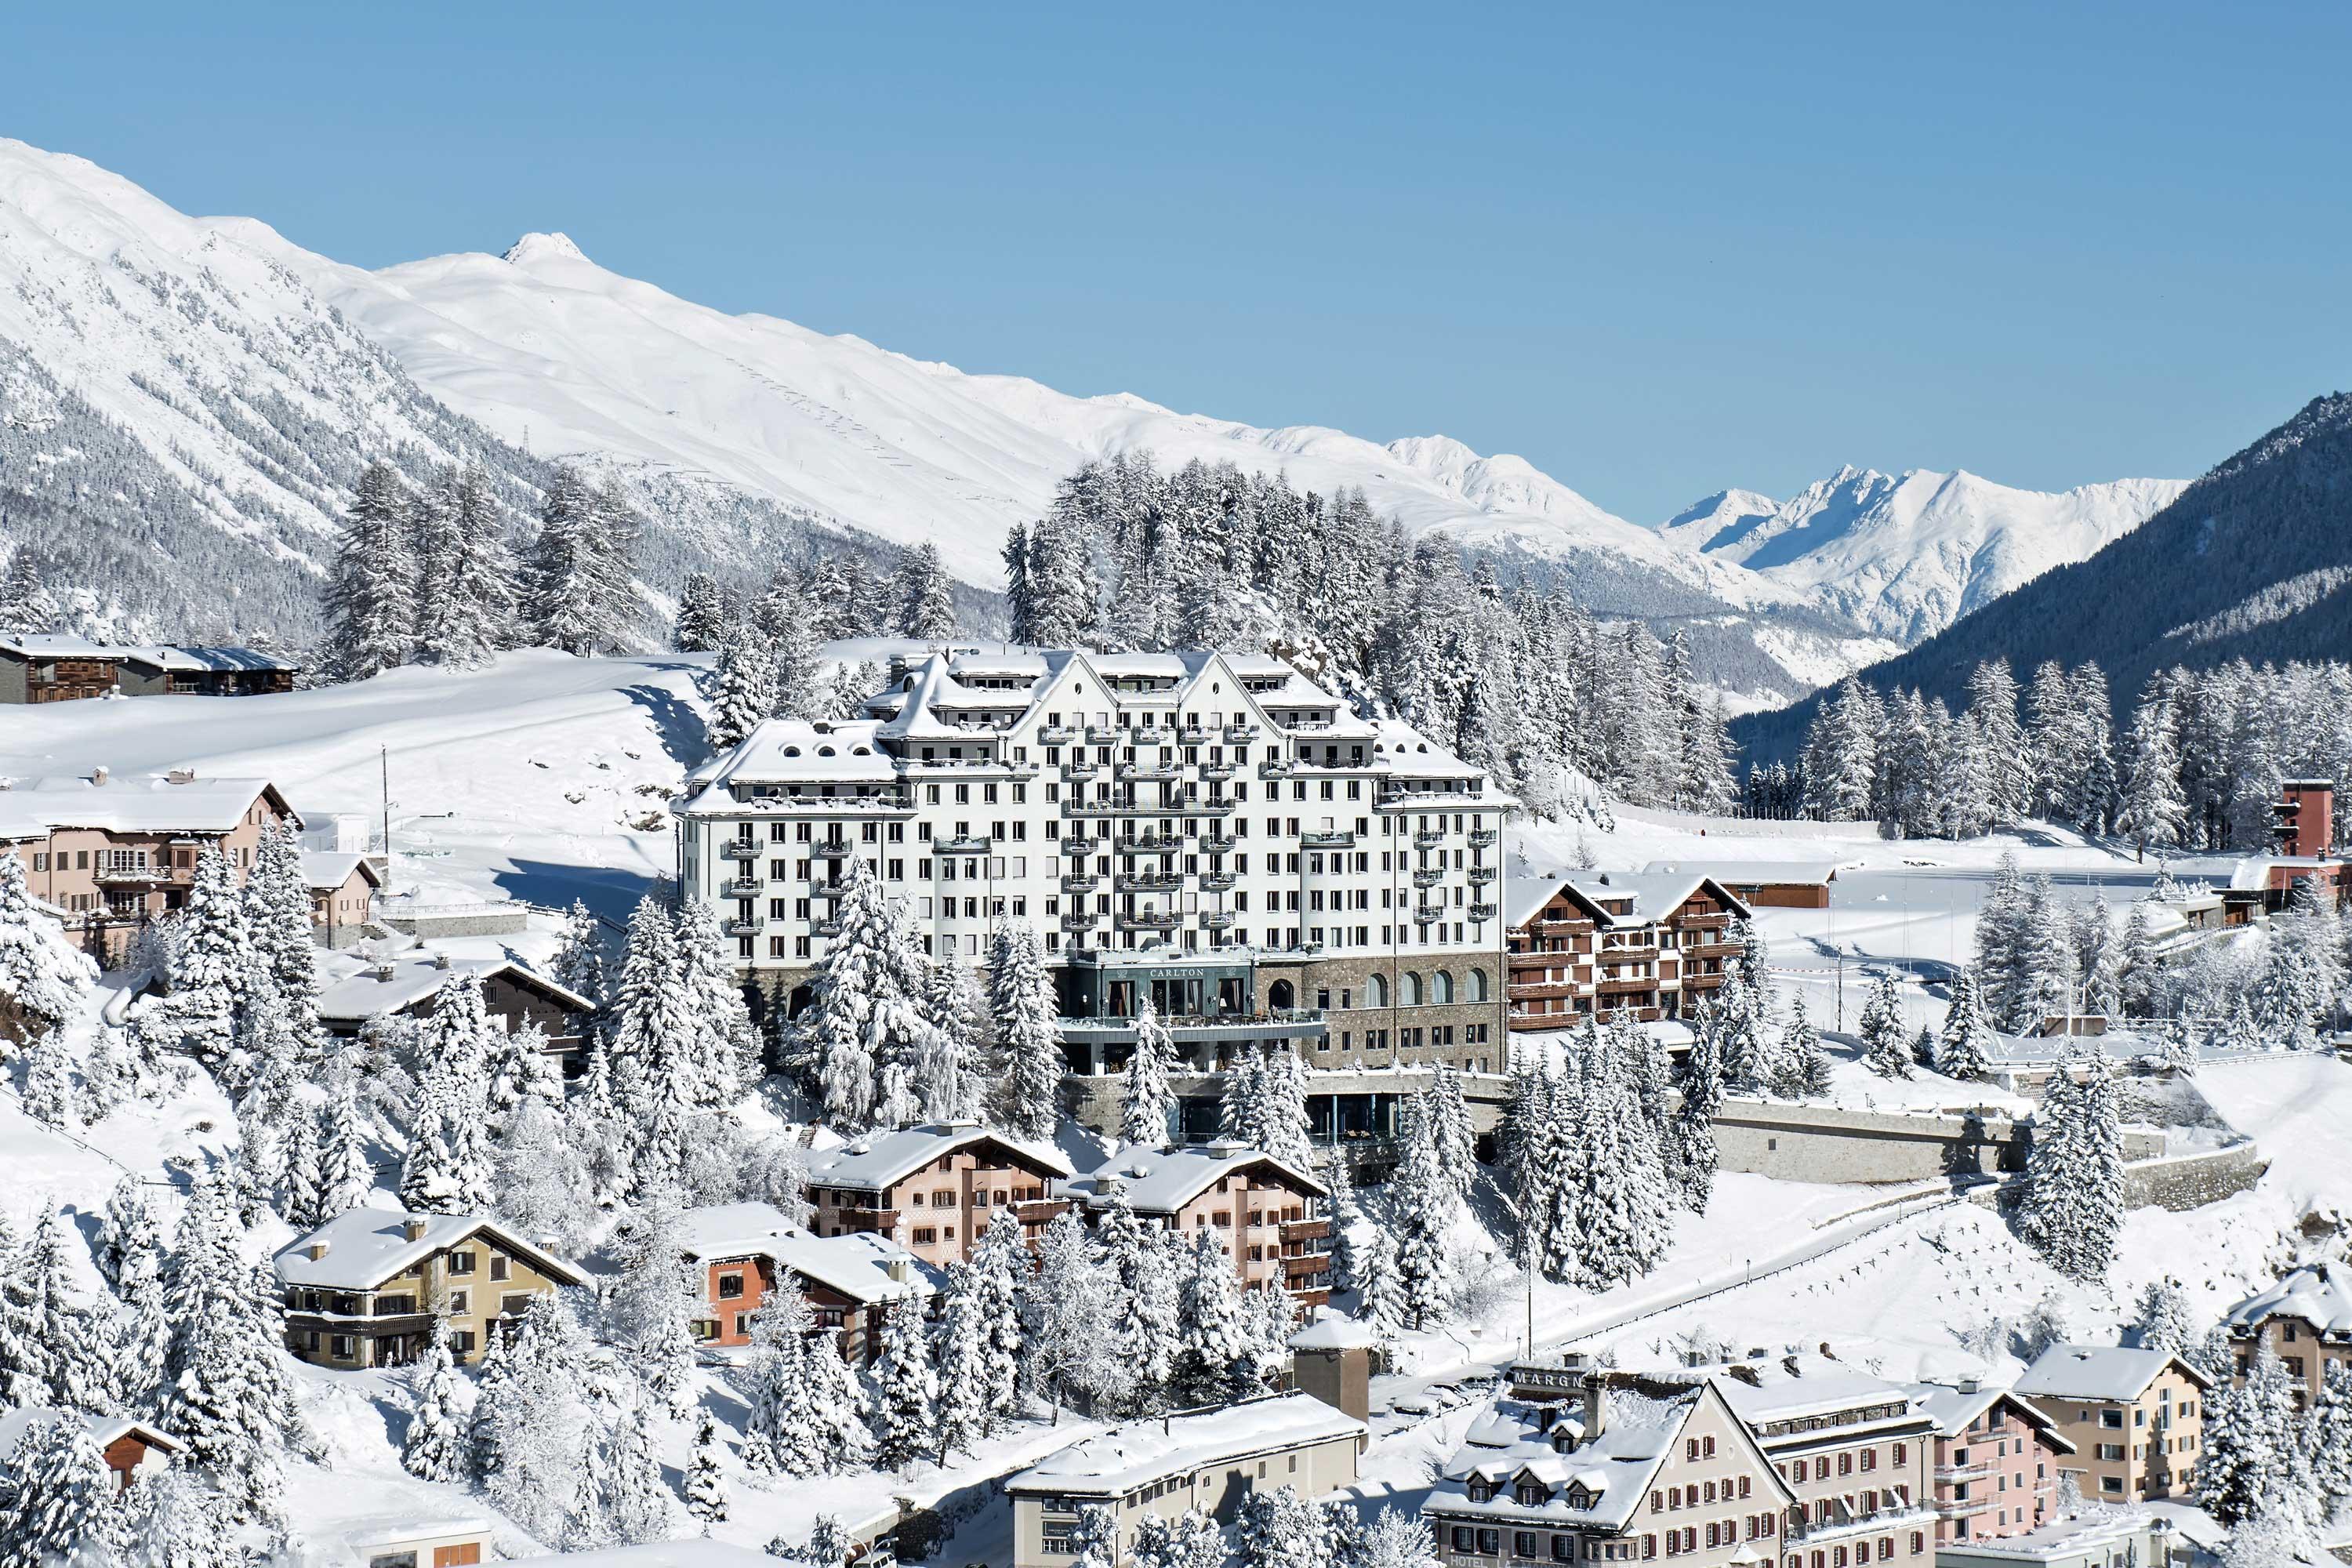 Nach eineinhalb Jahren öffnete das Carlton Hotel St. Moritz im Dezember 2007 seine Türen wieder. Komplett renoviert empfängt das 1913 errichtete Haus seine Gäste jetzt mit 60 Junior Suiten und Suiten - alle mit Blick auf den St. Moritzersee und die Engadiner Bergwelt.